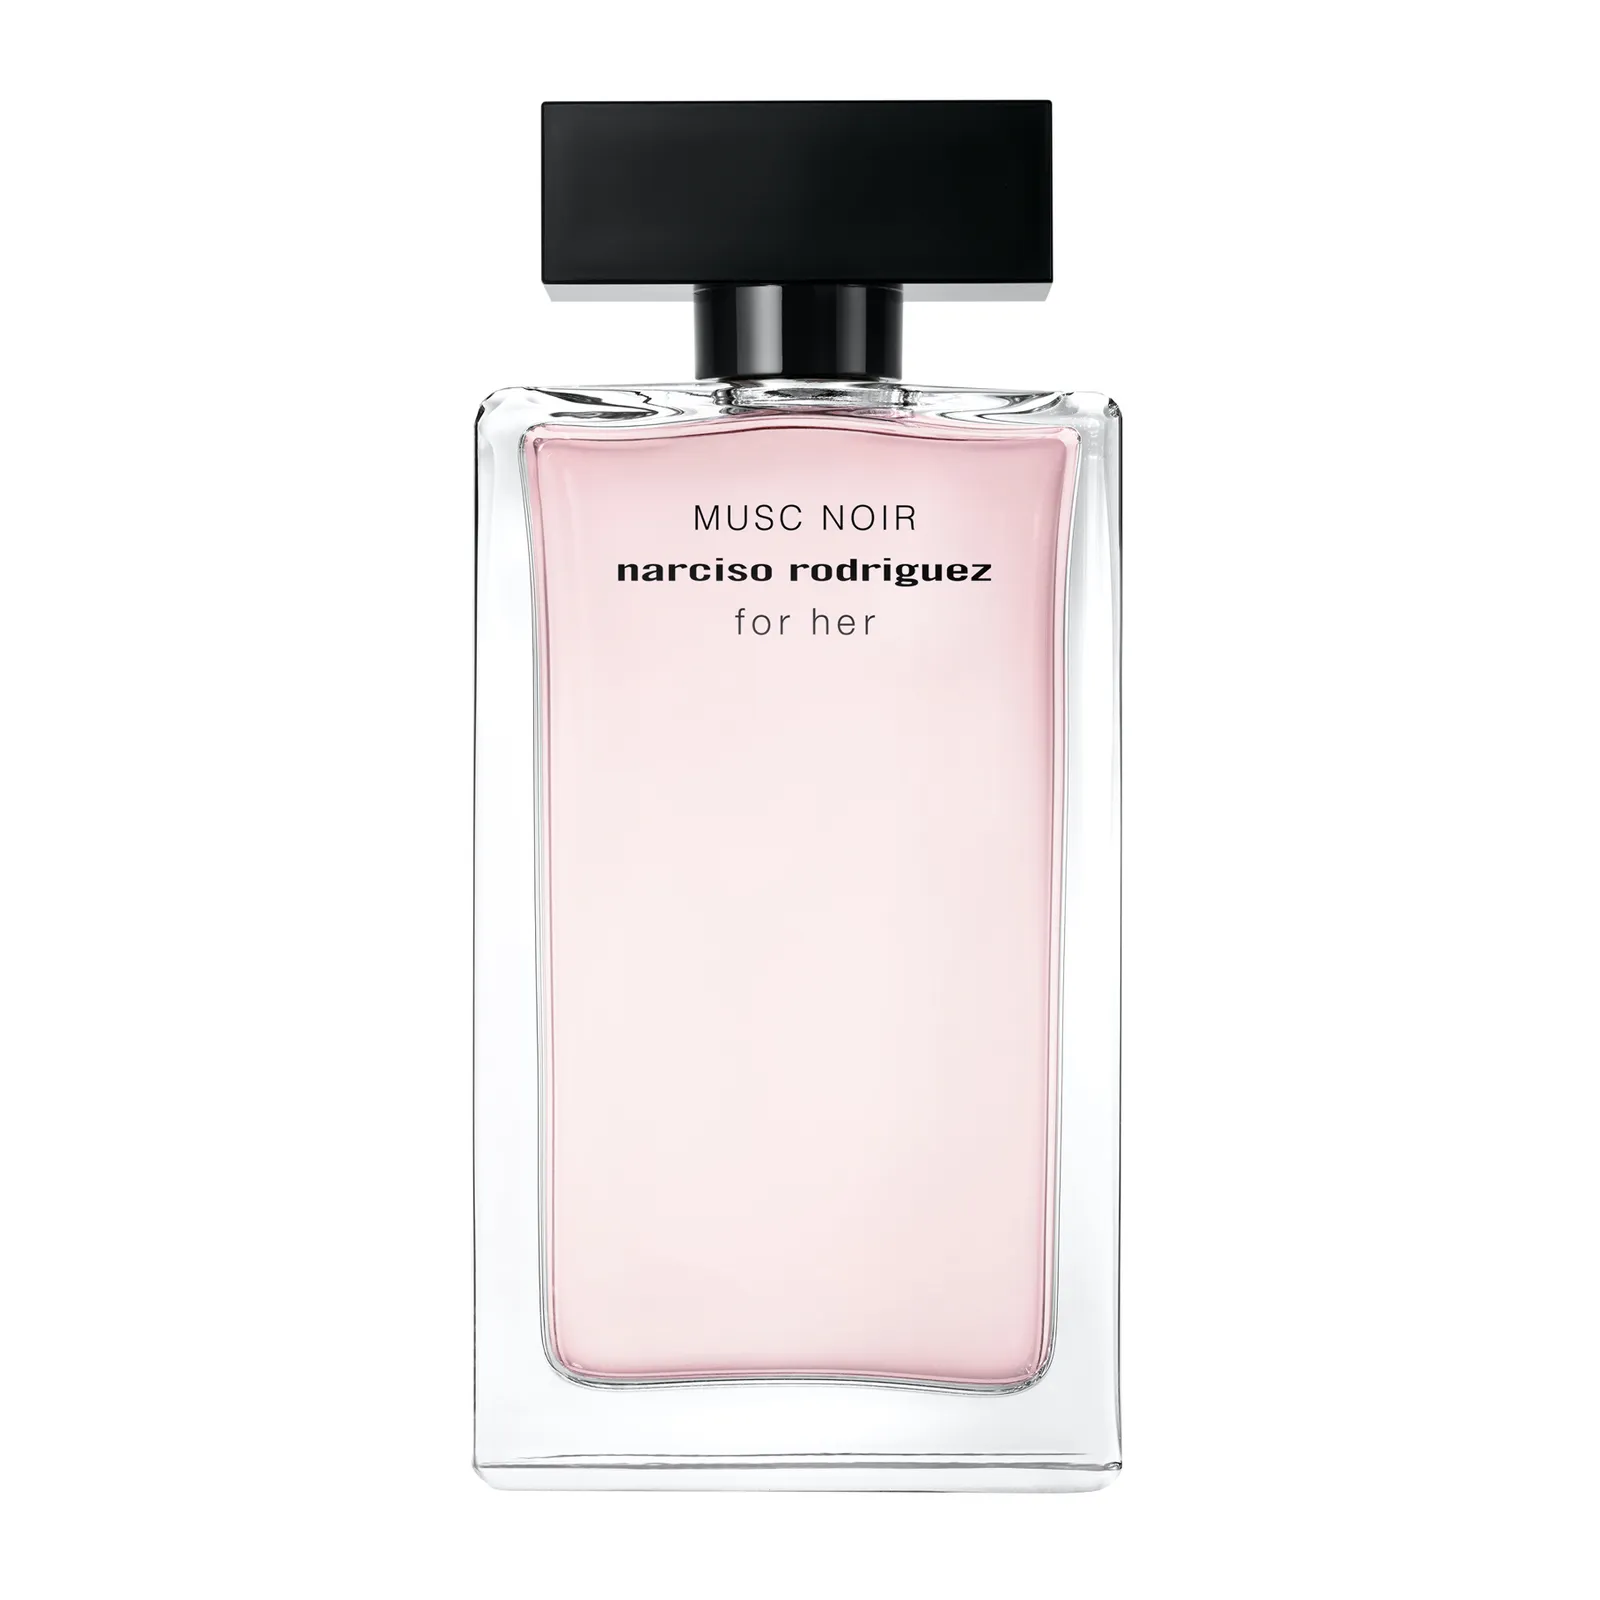 Narciso Rodriguez Musc Noir for Her Eau de Parfum من نارسيسو رودريغ 